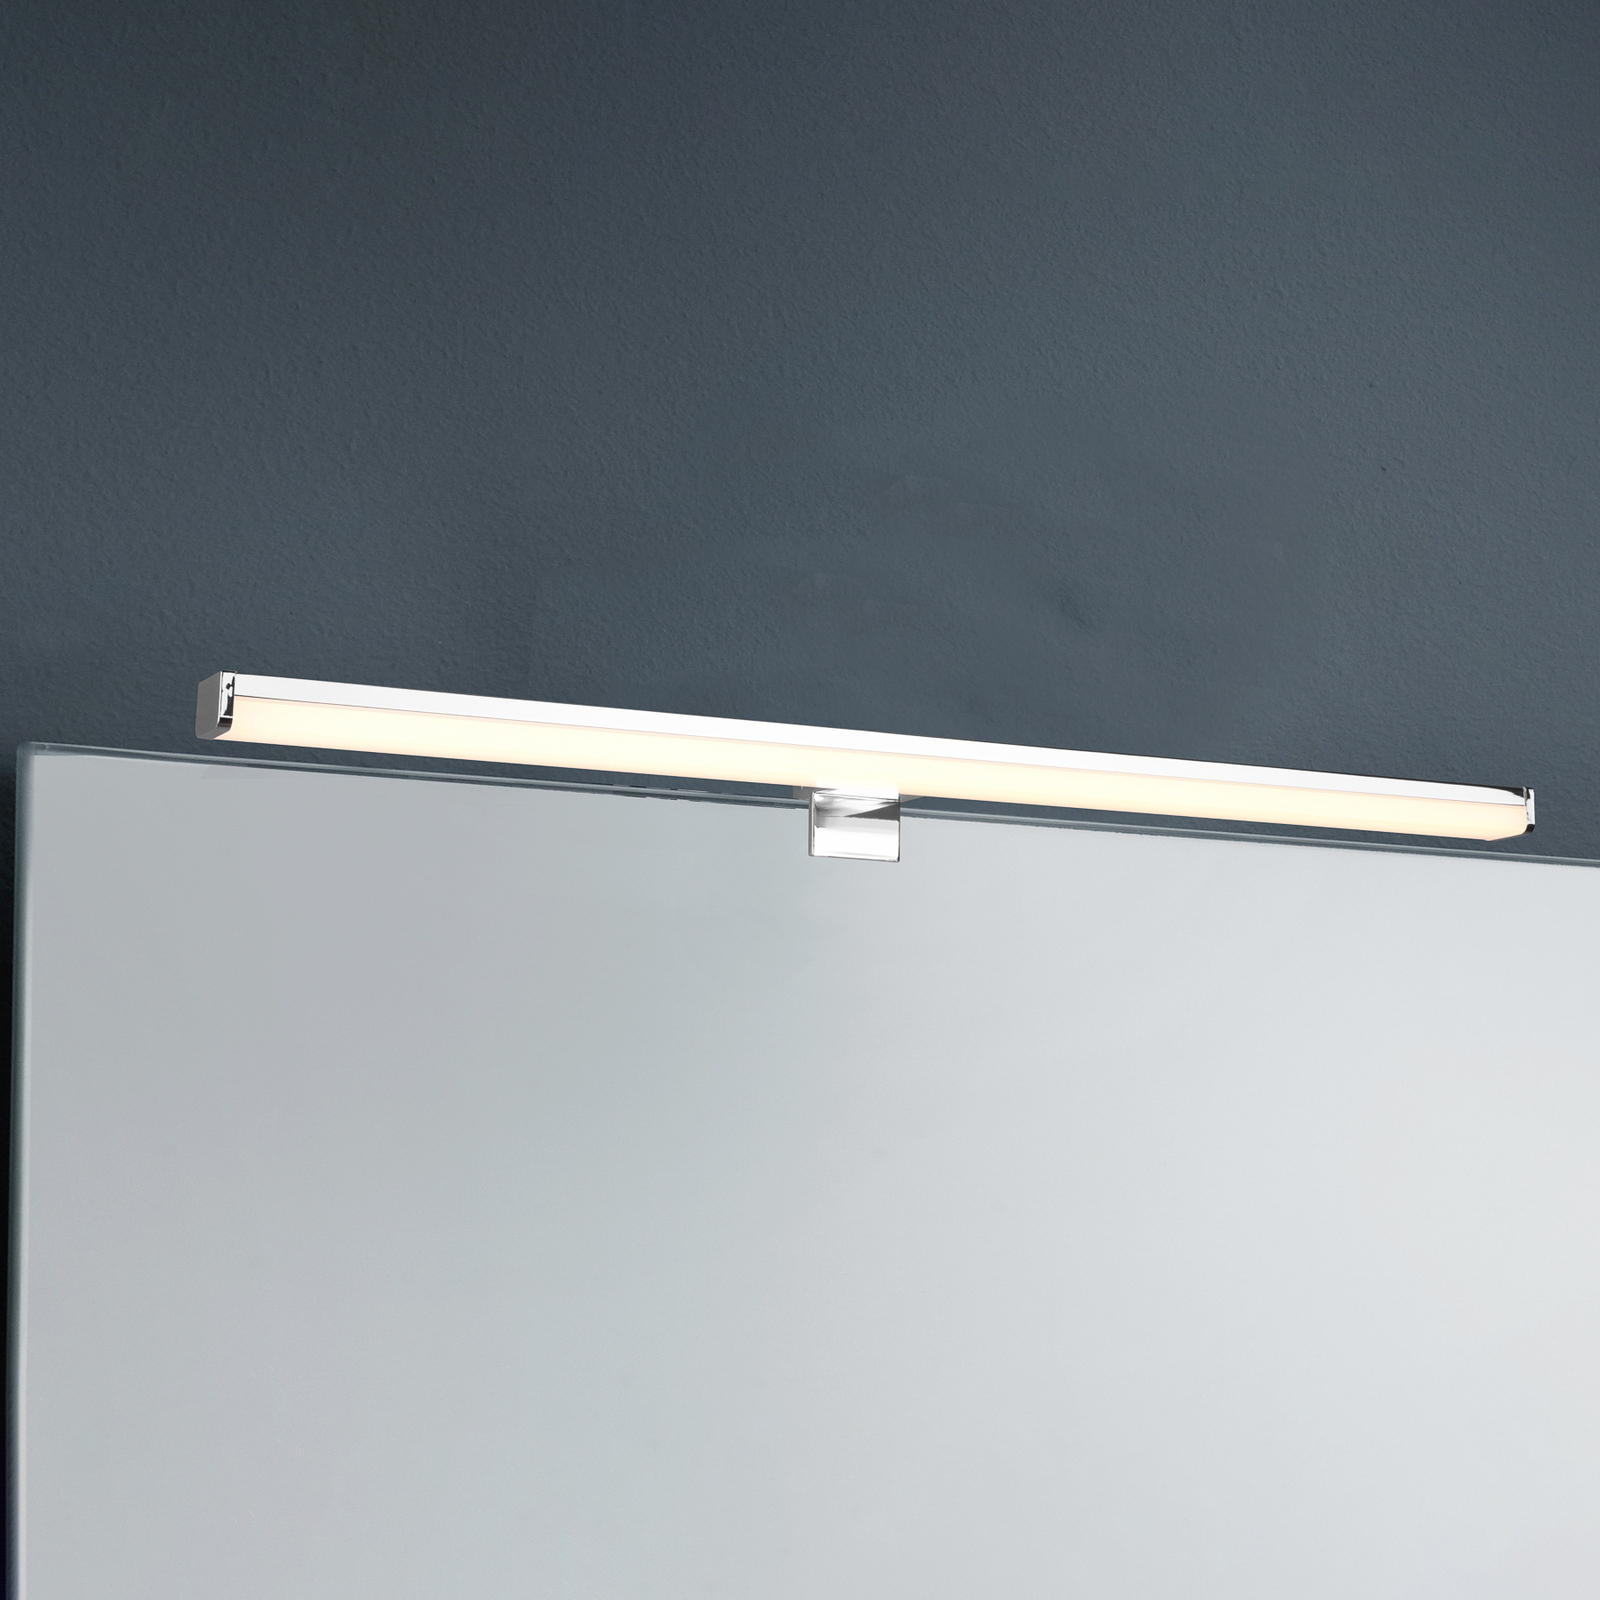 LED nástěnné světlo Lino, chrom/bílá